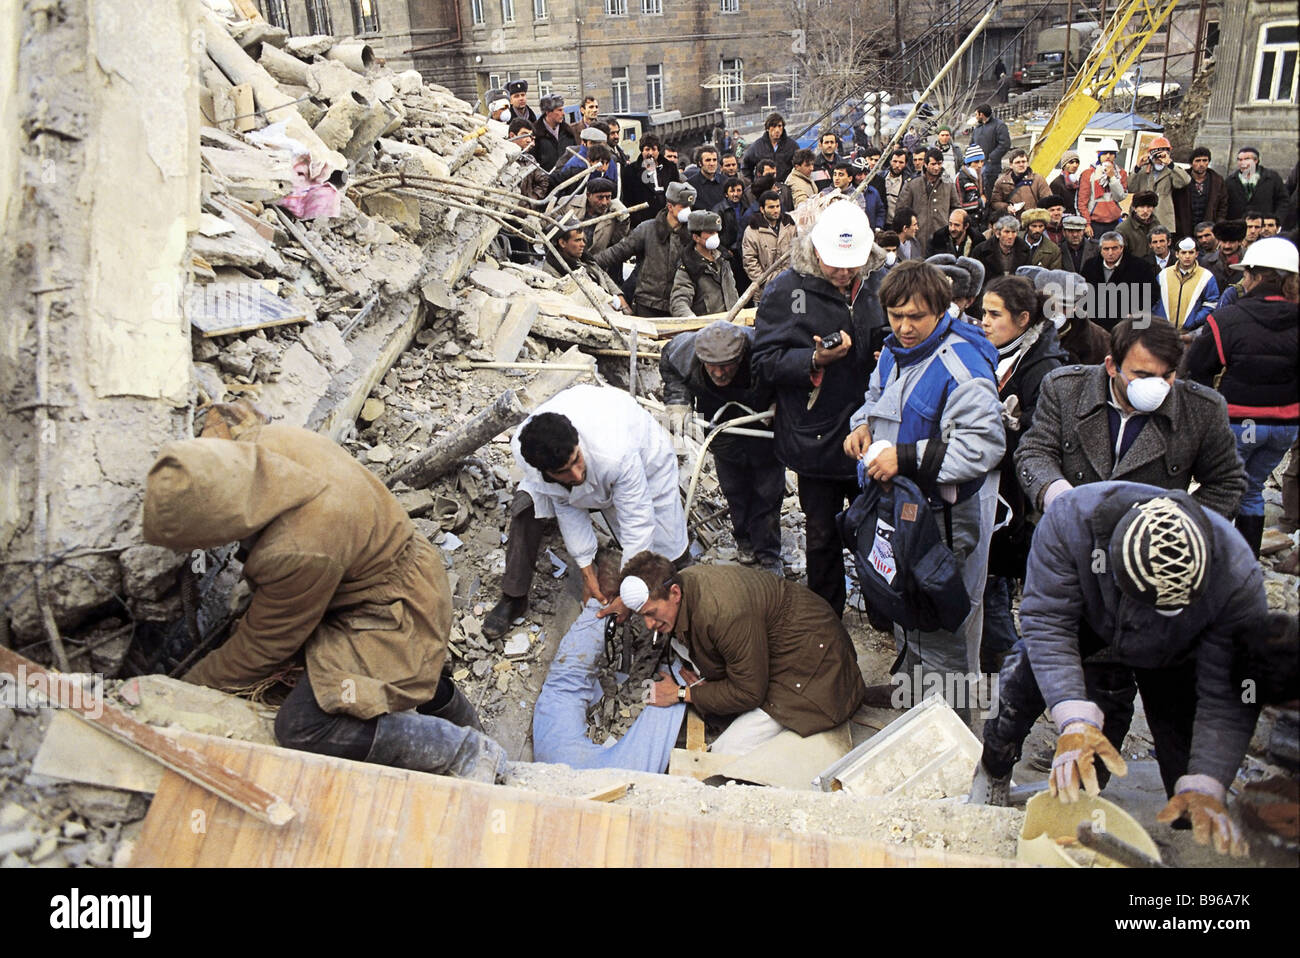 В каком году было сильное землетрясение. Гюмри землетрясение 1988. Землетрясение 7 декабря 1988 Армения Ленинакан. Землетрясение в Спитаке в Армении 1988. Землетрясение в Грузии 1988.